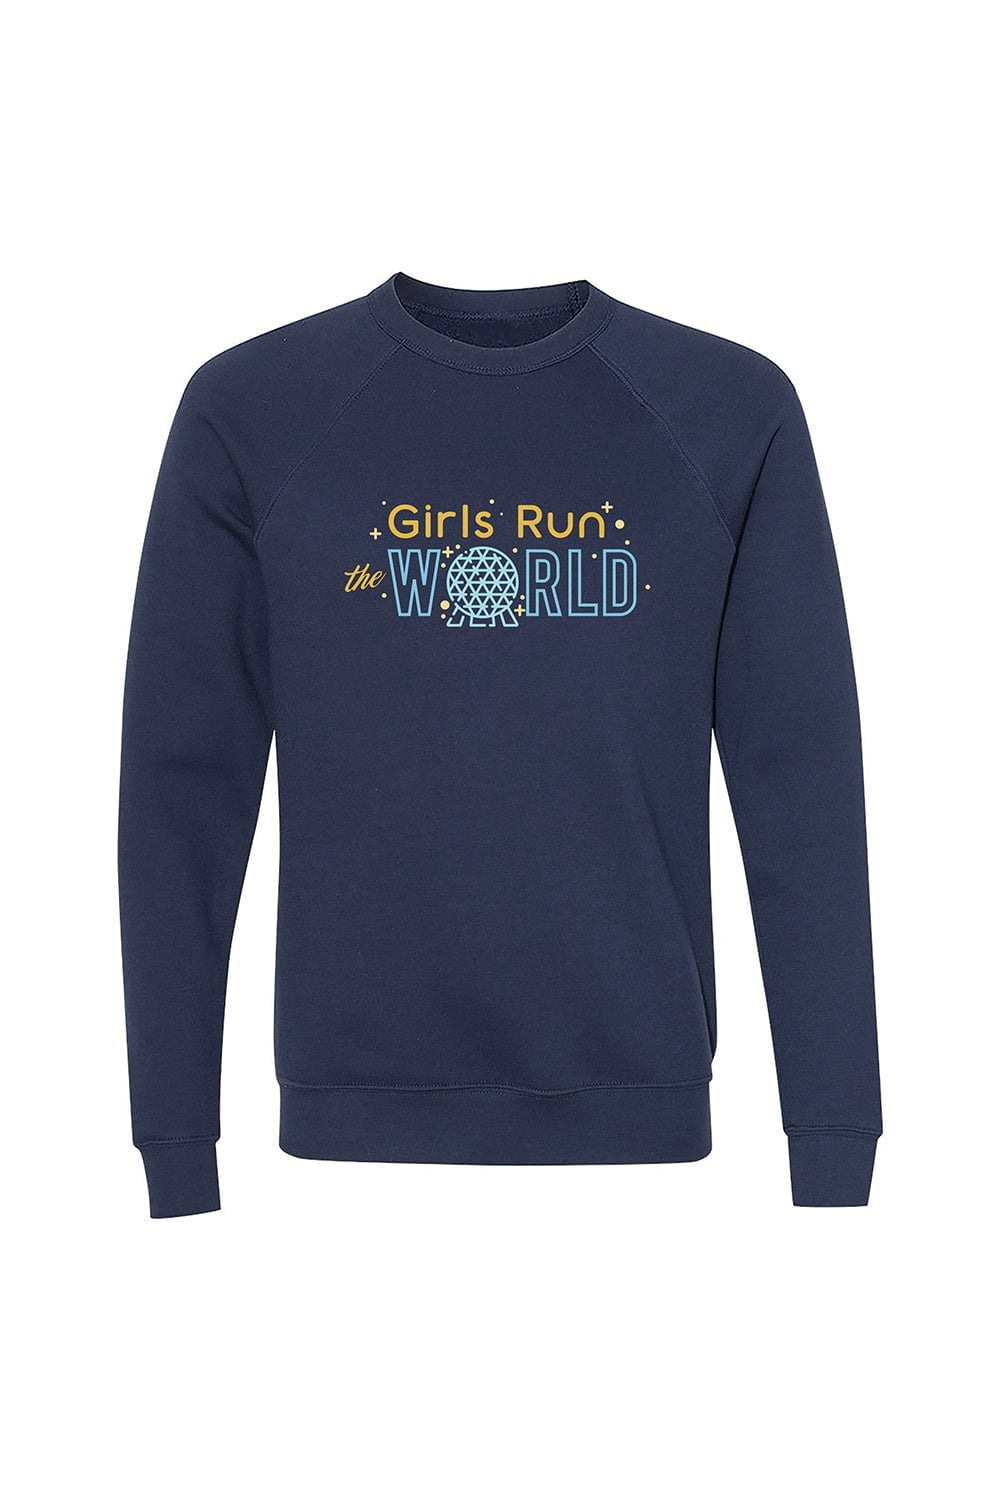 Sarah Marie Design Studio Sweatshirt XSmall / Navy Girls Run The World Epcot Sweatshirt